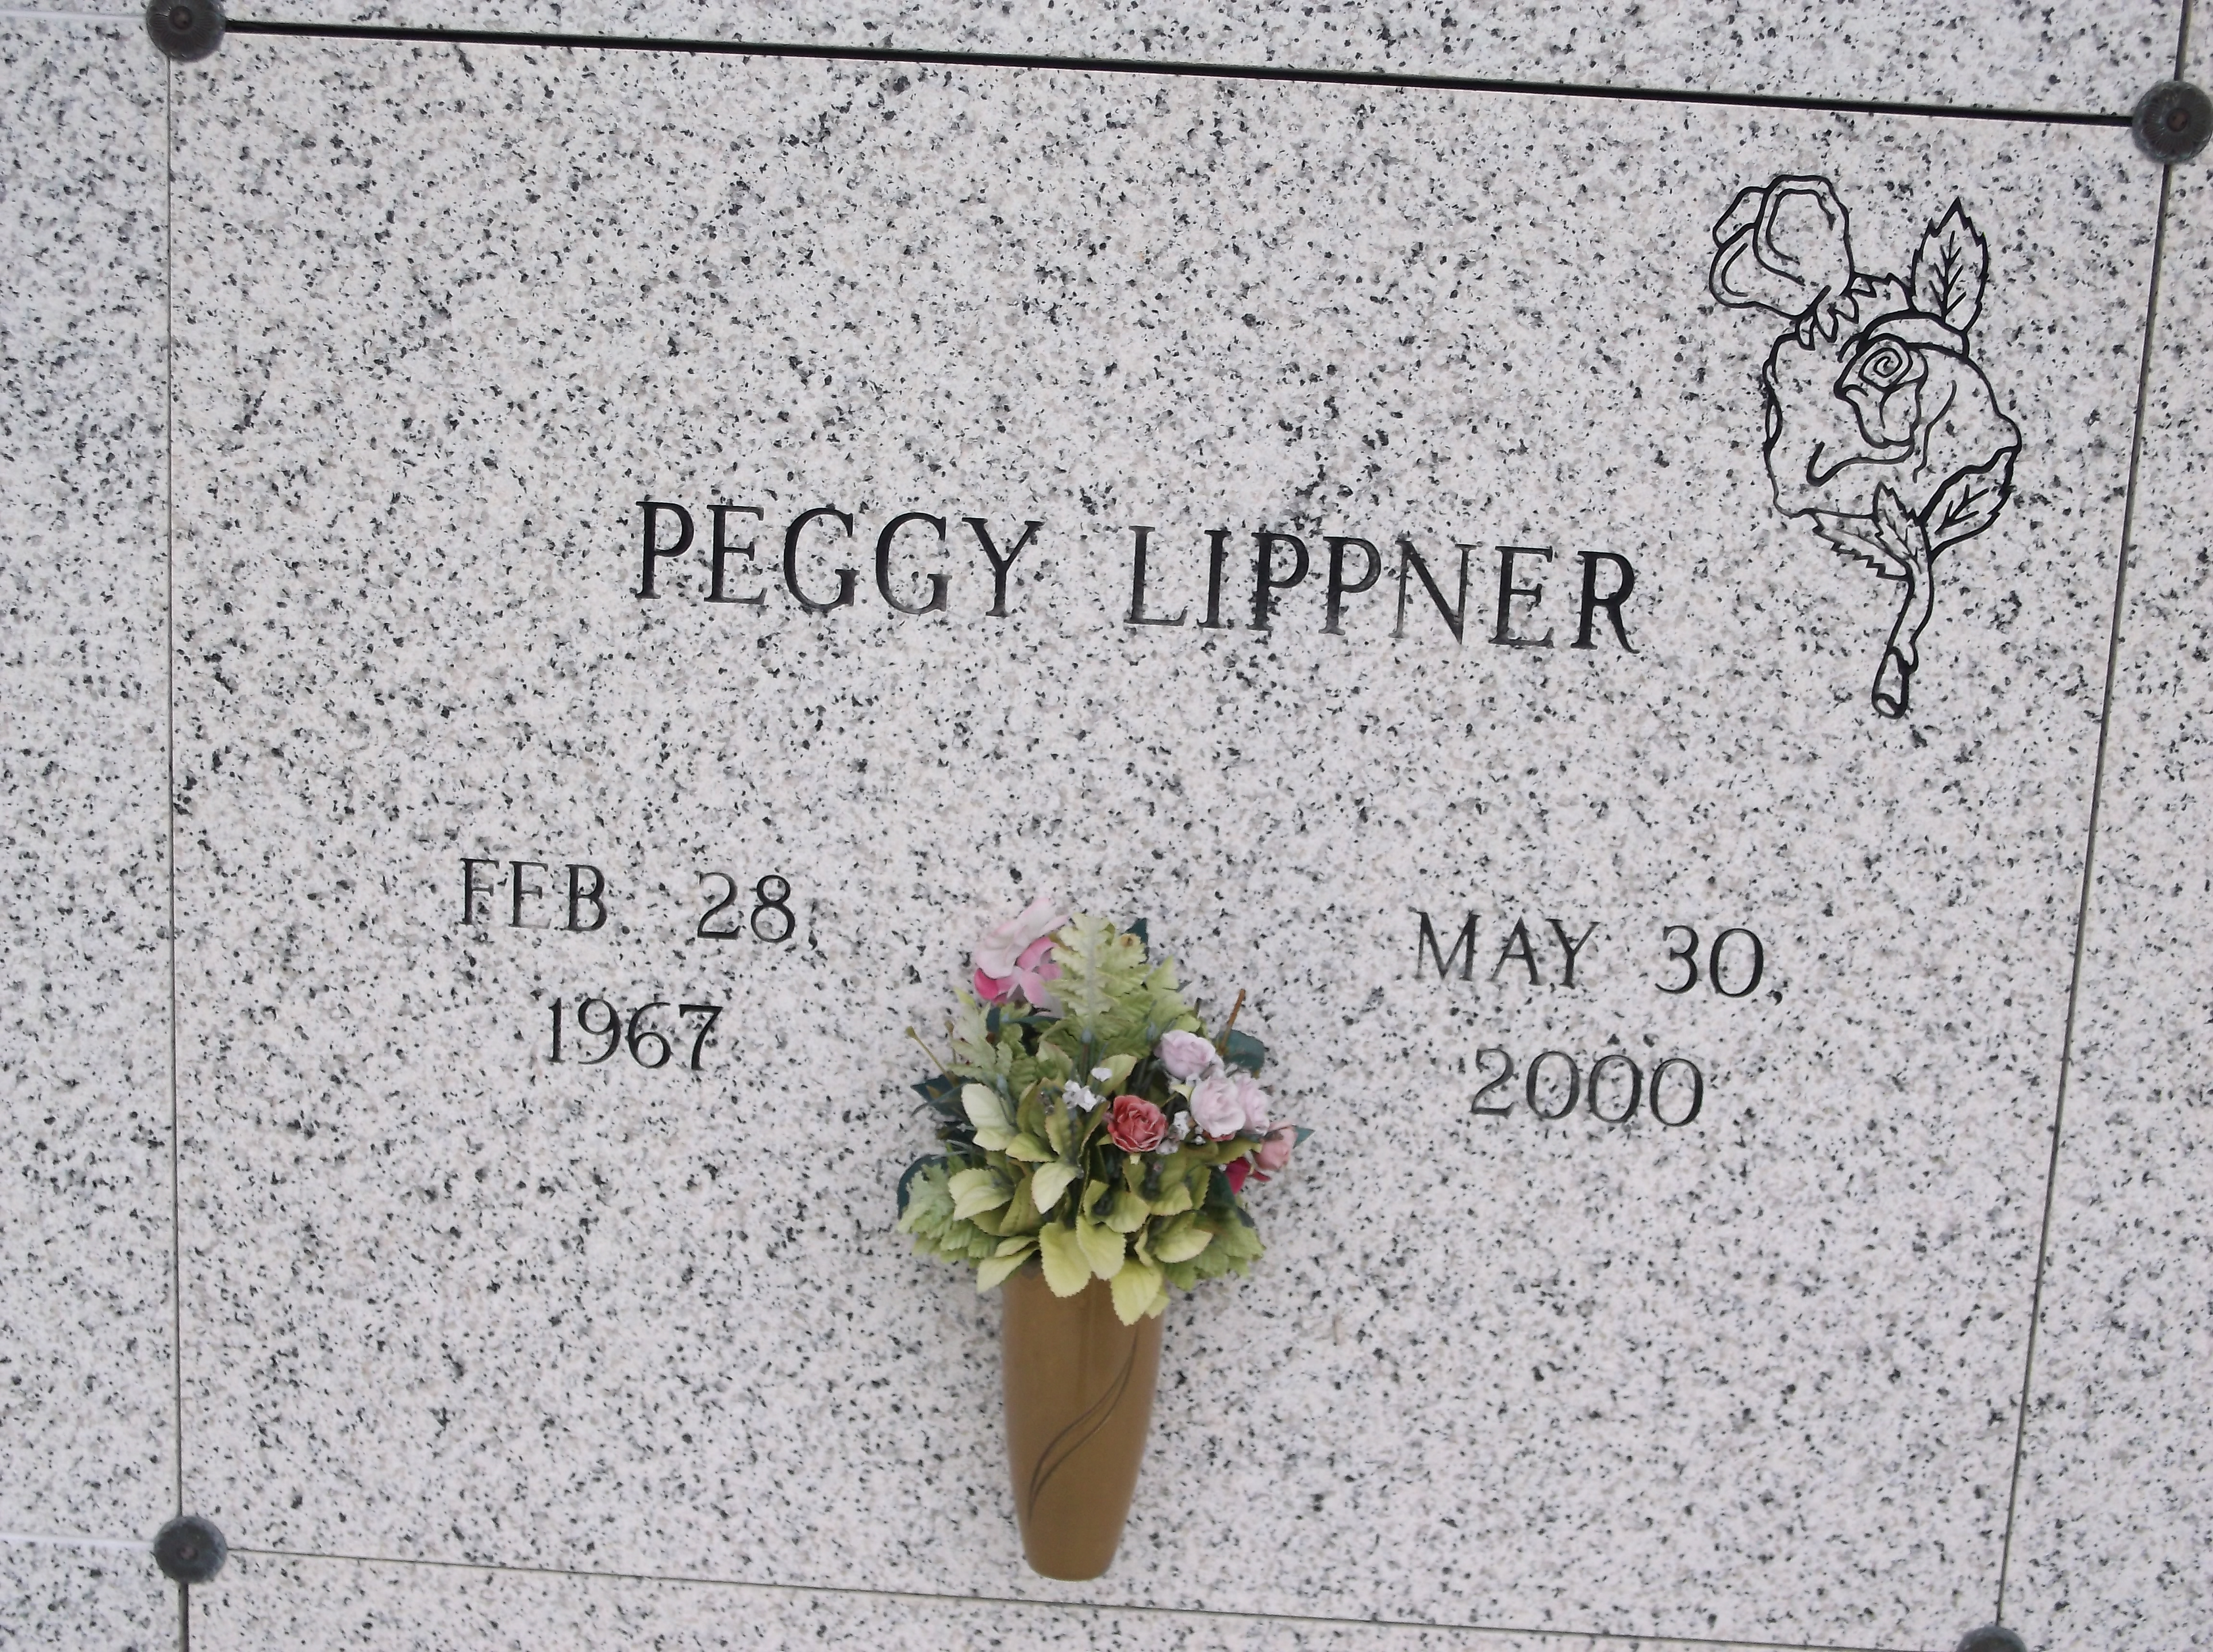 Peggy Lippner